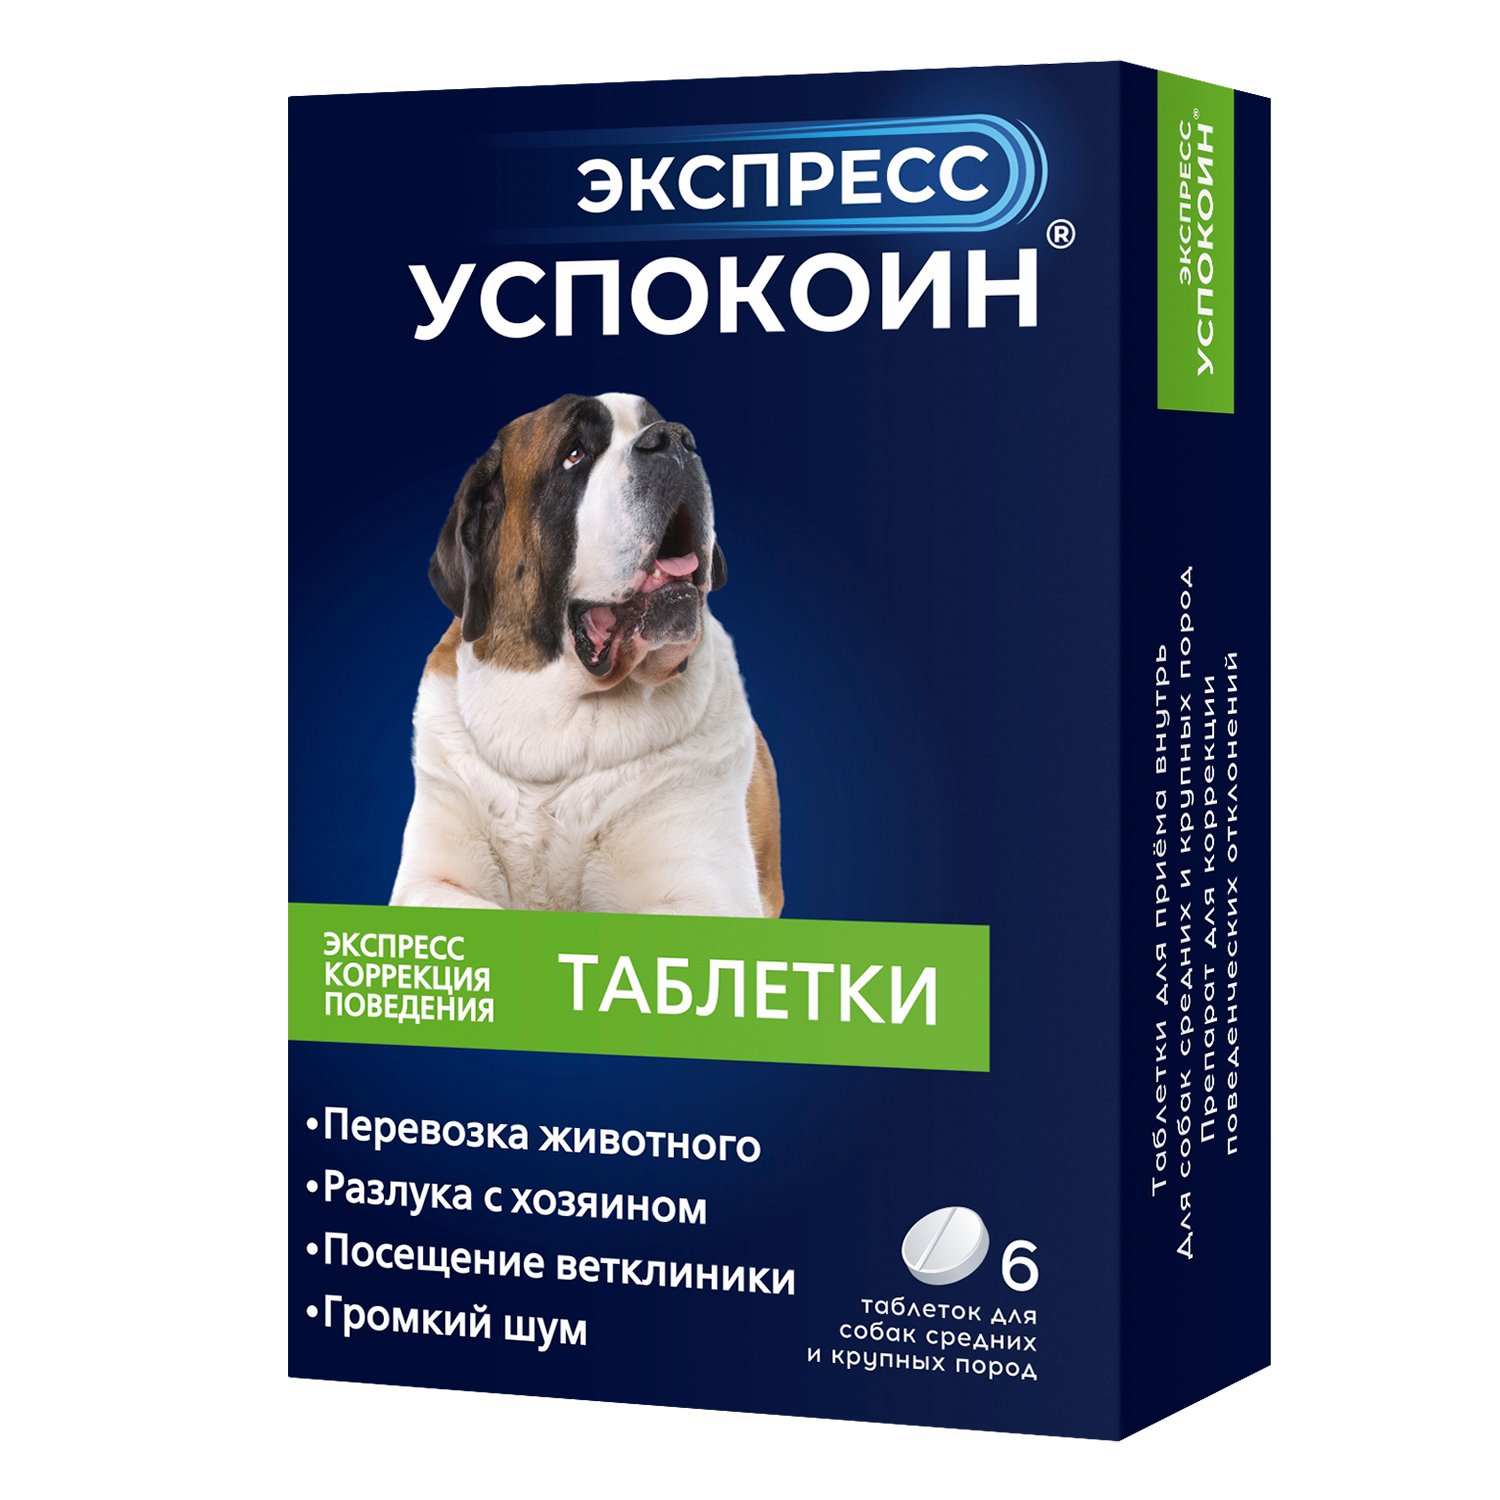 Успокоительное для собак Астрафарм Экспресс Успокоин средних и крупных 6 таблетки - фото 1